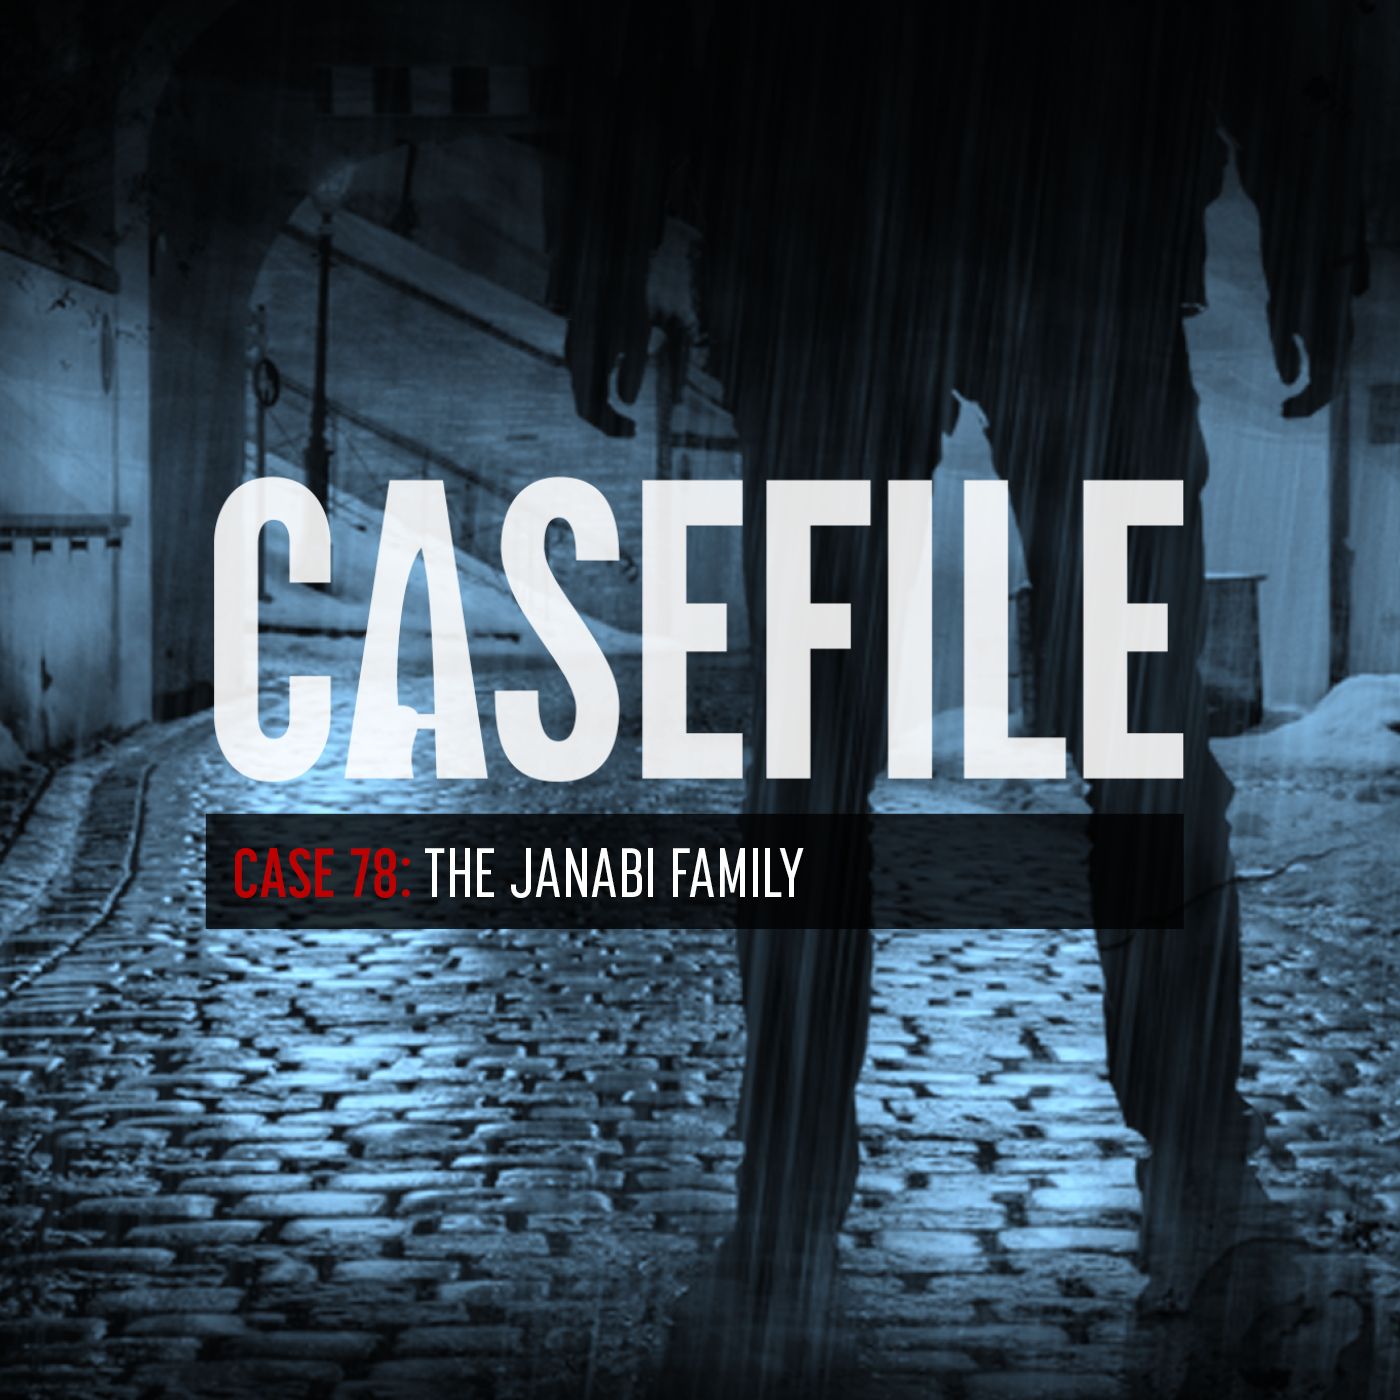 Case 78: The Janabi Family